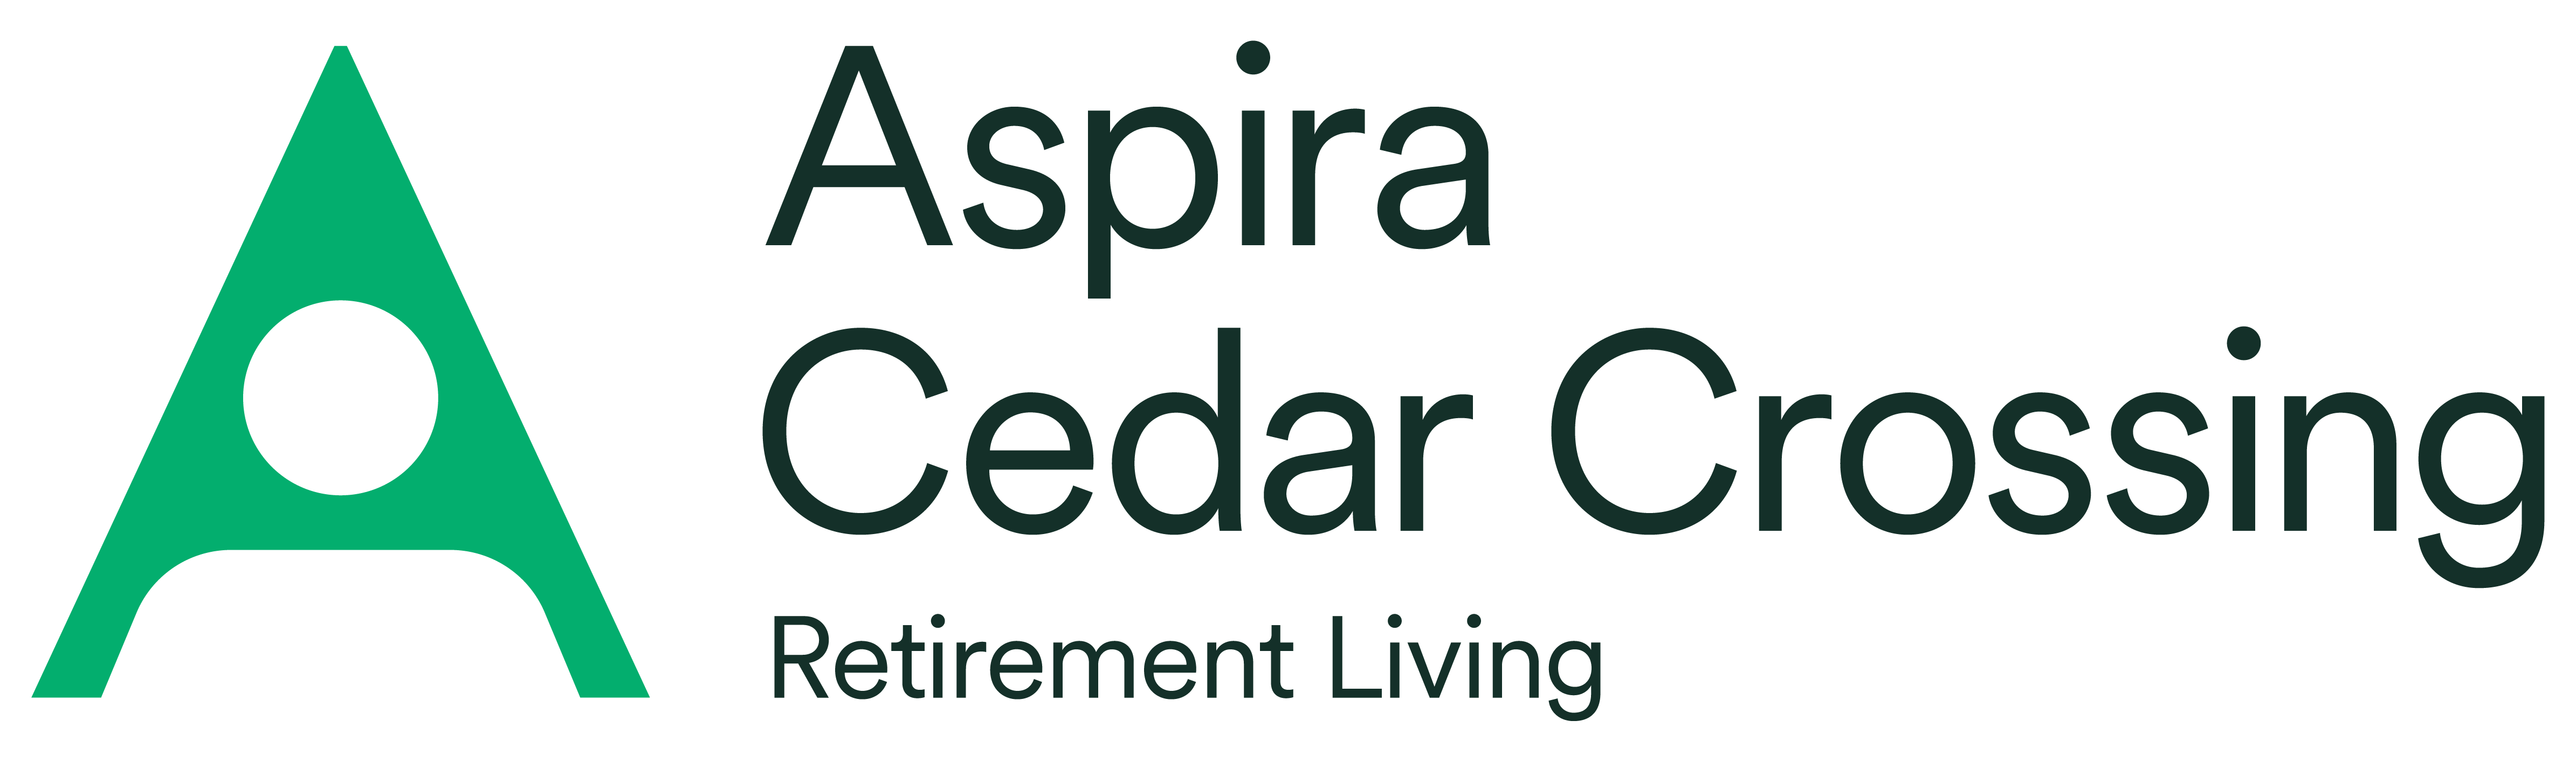 Aspira Cedar Crossing Logo